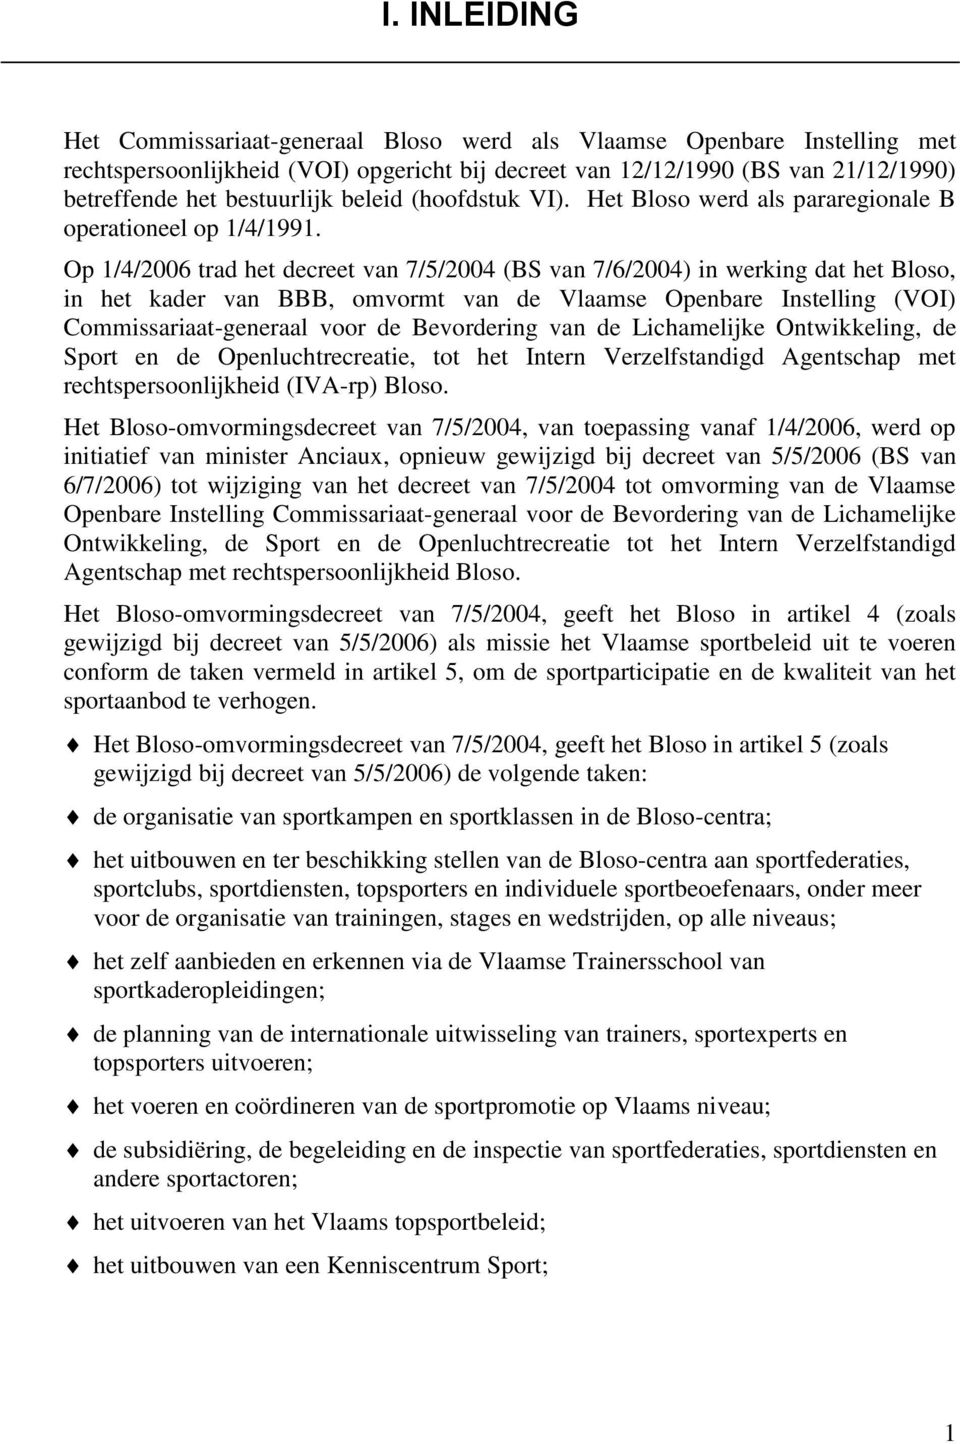 Op 1/4/2006 trad het decreet van 7/5/2004 (BS van 7/6/2004) in werking dat het Bloso, in het kader van BBB, omvormt van de Vlaamse Openbare Instelling (VOI) Commissariaat-generaal voor de Bevordering